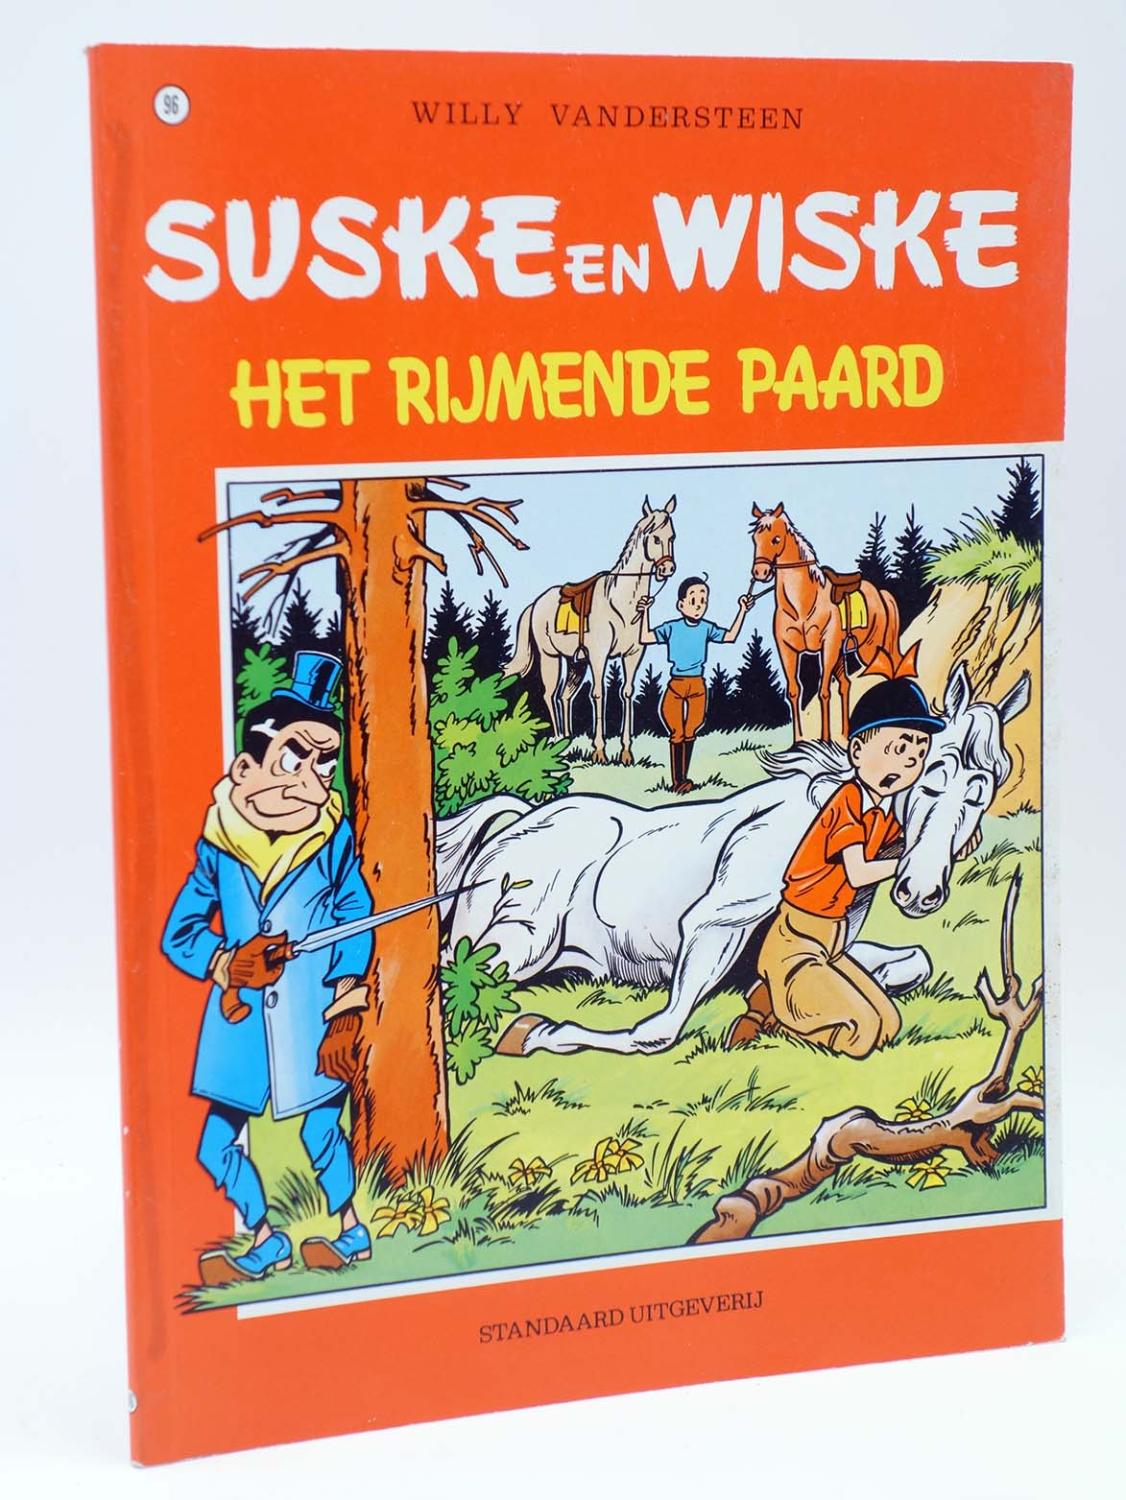 SUSKE EN WISKE 96. HET RIJMENDE PAARD (Willy Vandersteen) 1996. L?NEA CLARA. EN BELGA - Willy Vandersteen